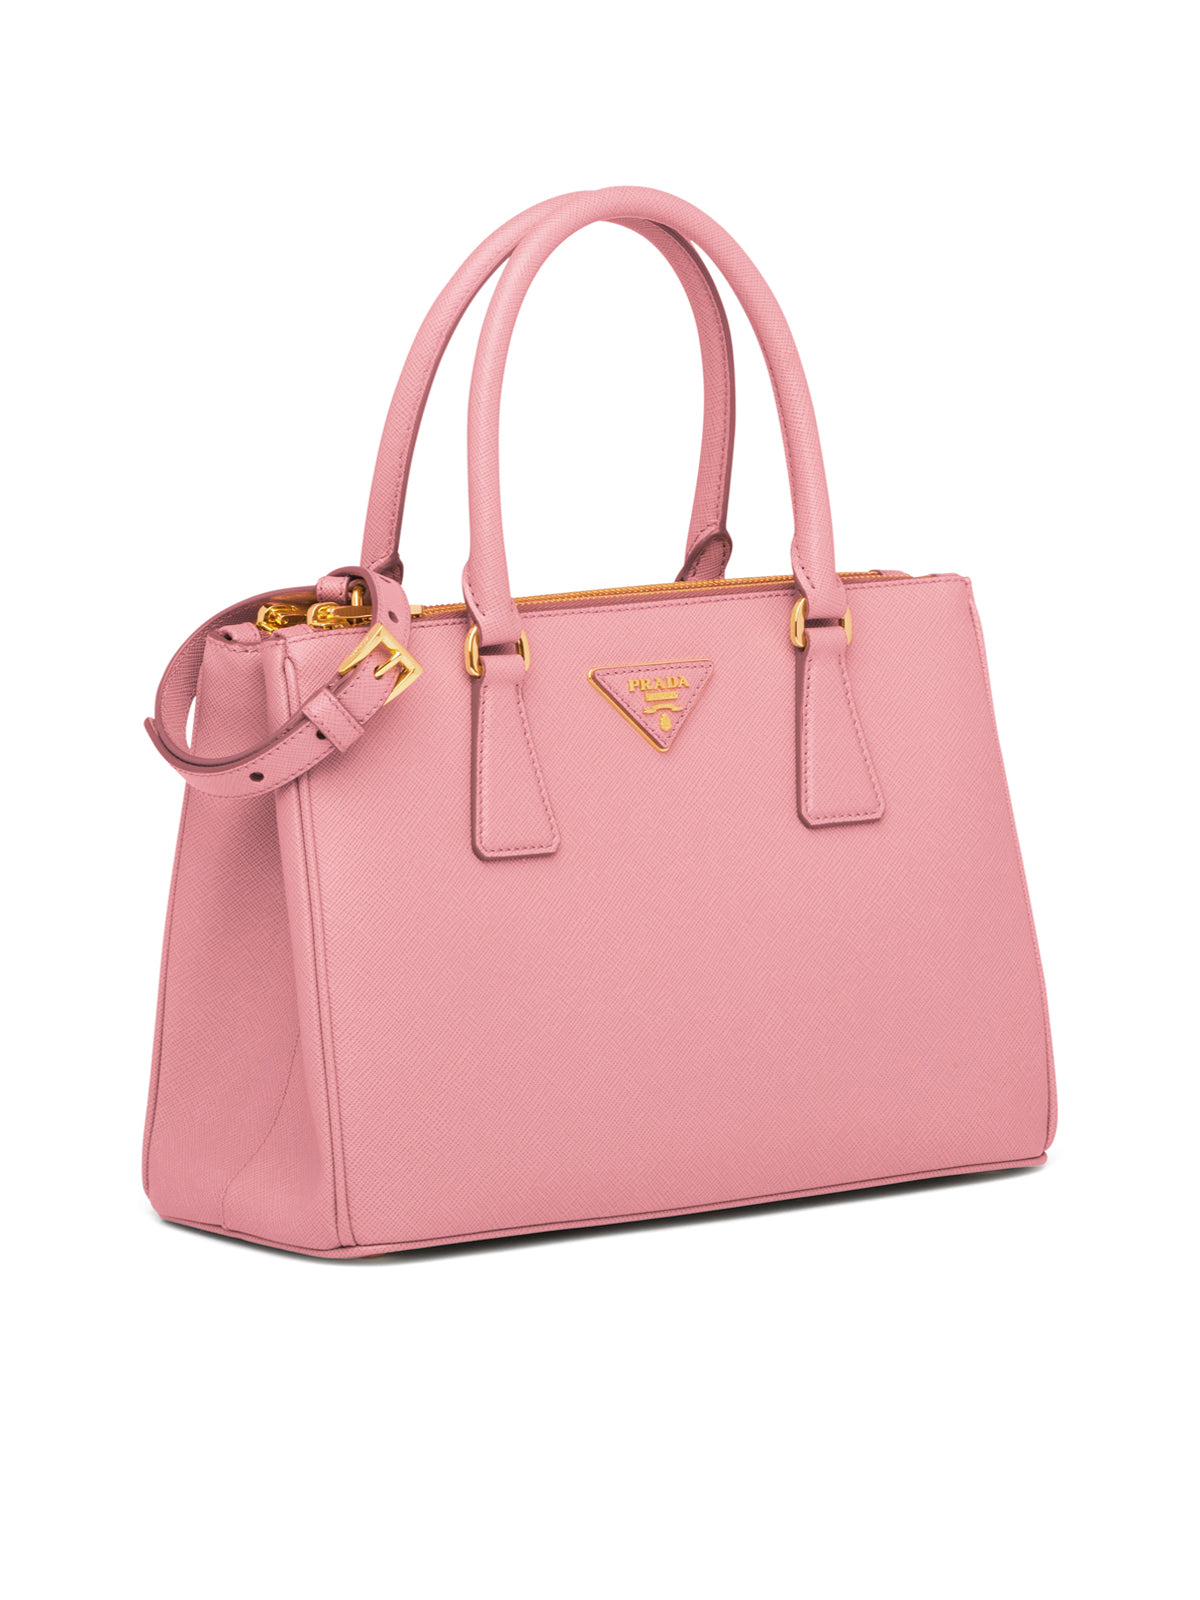 Prada Galleria bag in powder pink  Bags, Leather handbags, Prada